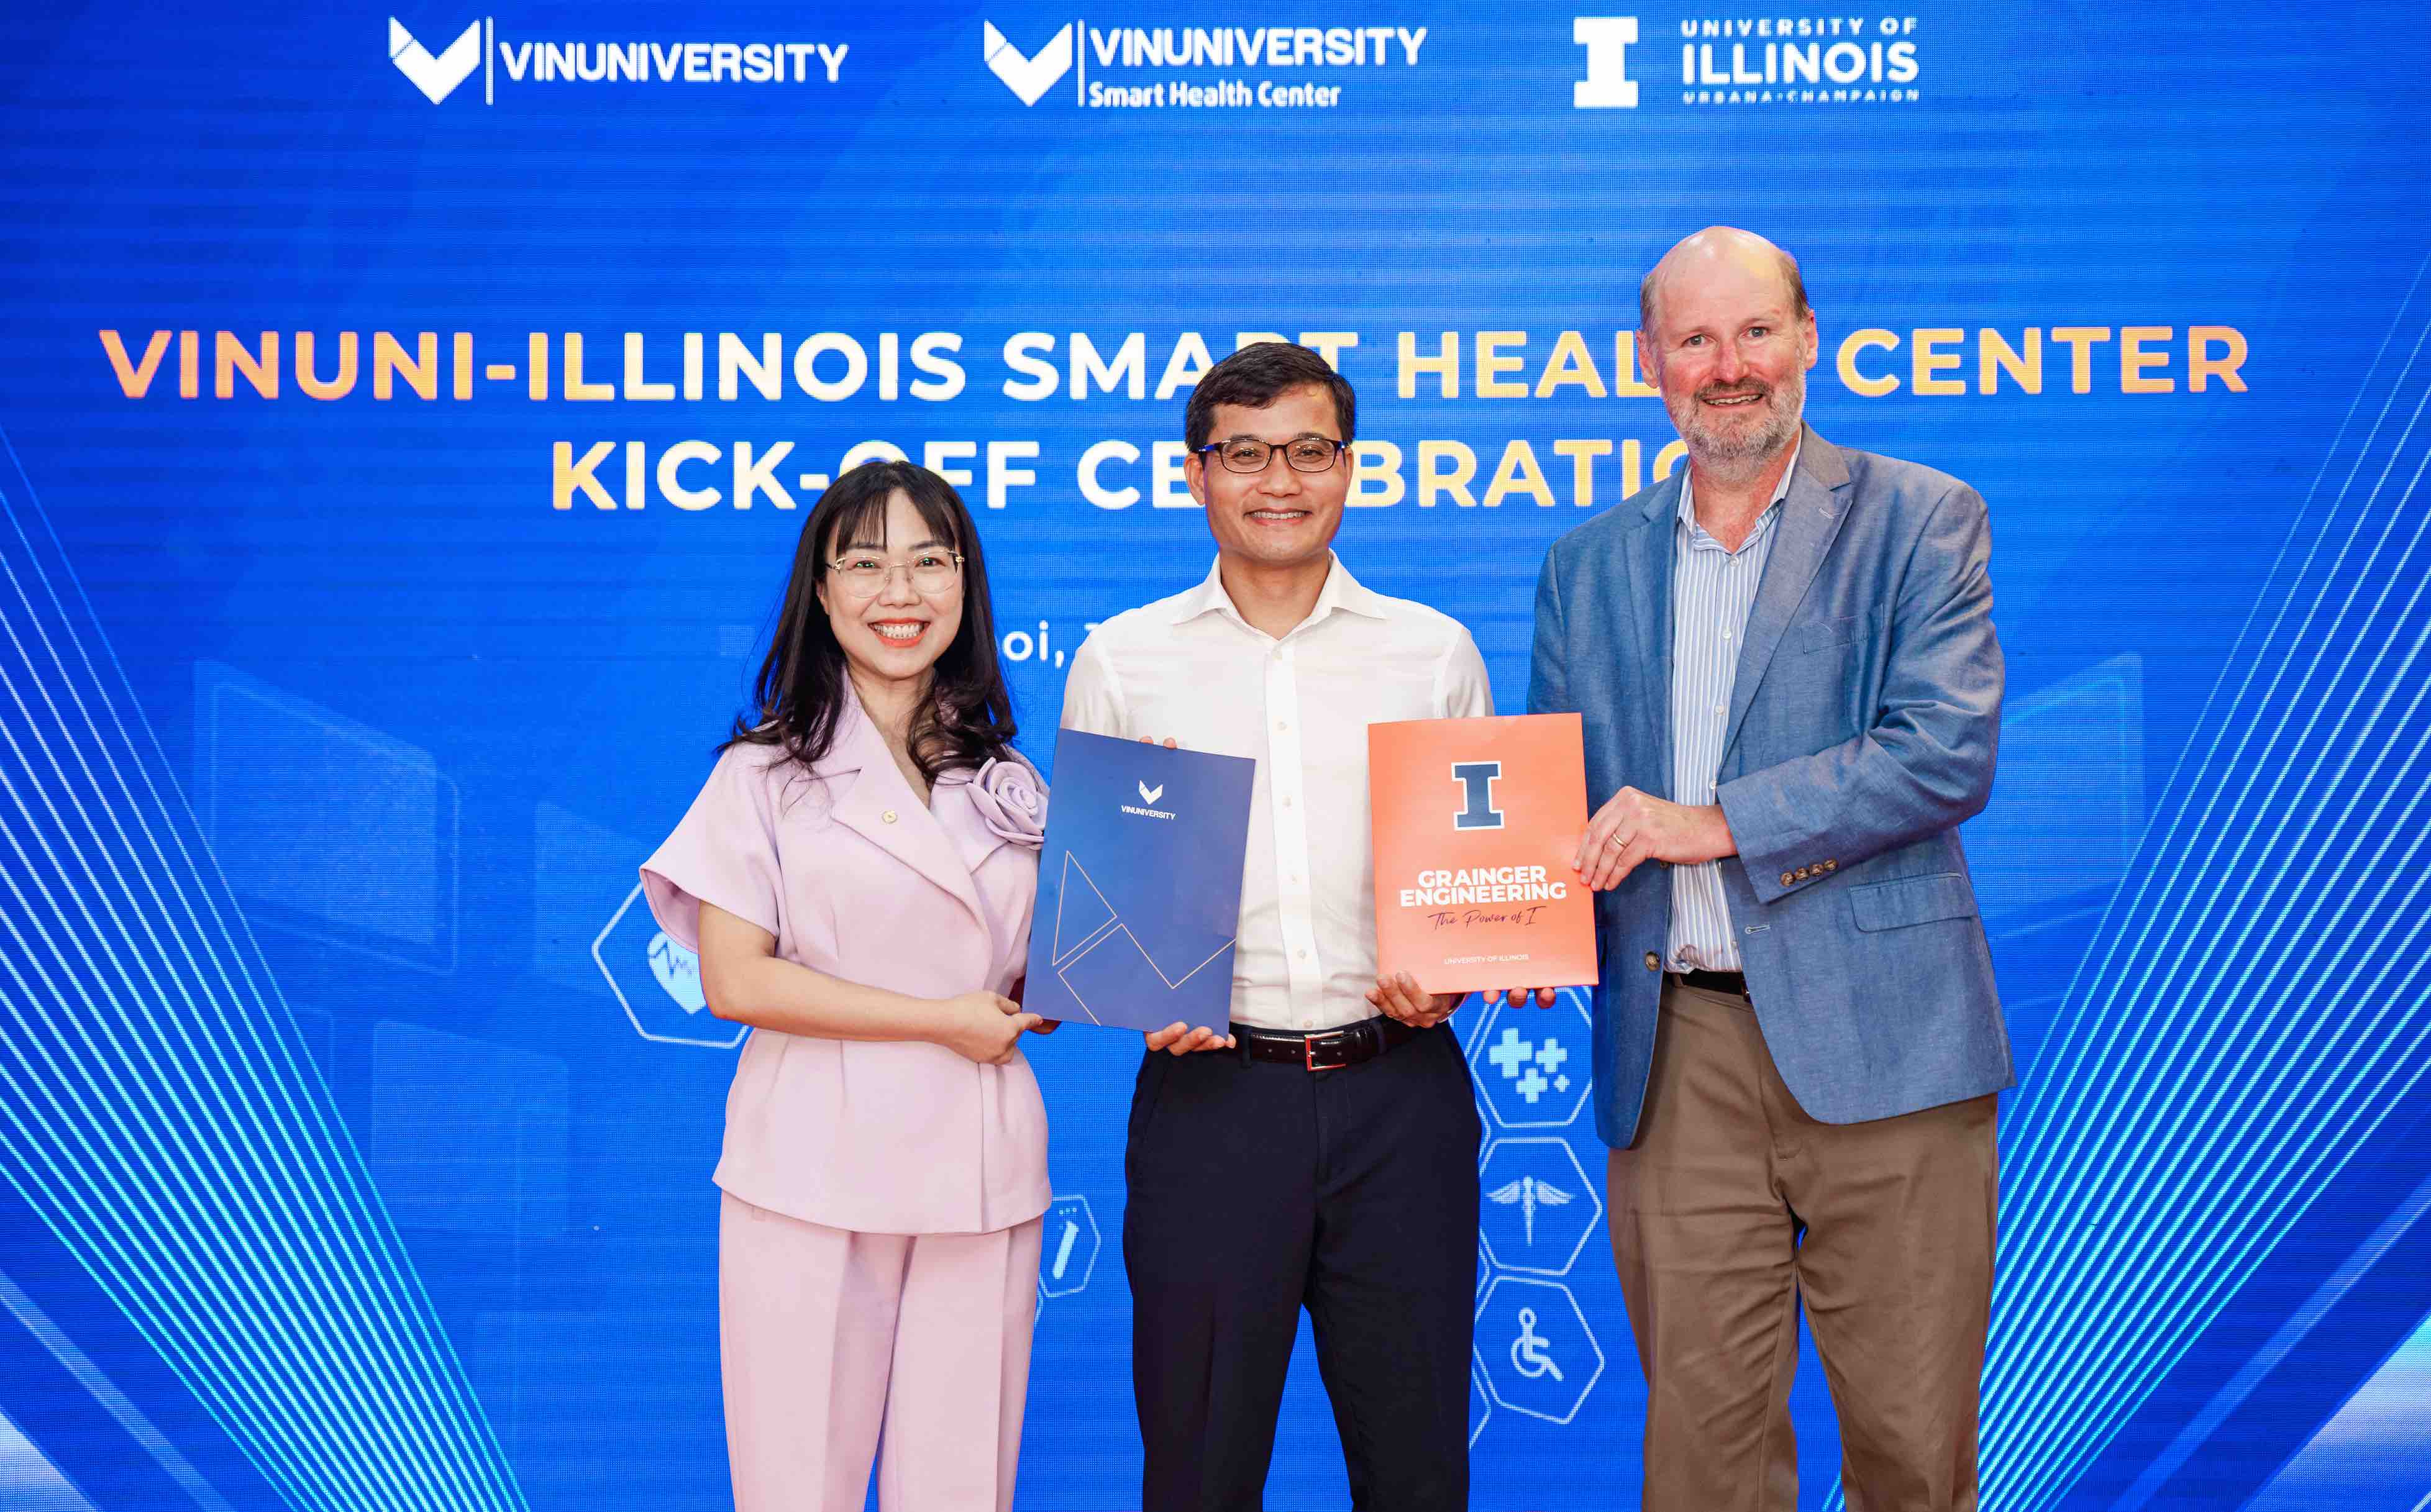 Lễ Ra mắt Trung tâm Nghiên cứu Sức khỏe Thông minh VinUni-Illinois (VISHC) có sự tham gia của đại diện Lãnh đạo Trường Đại học VinUni và Đại học Illinois Urbana-Champaign (UIUC).